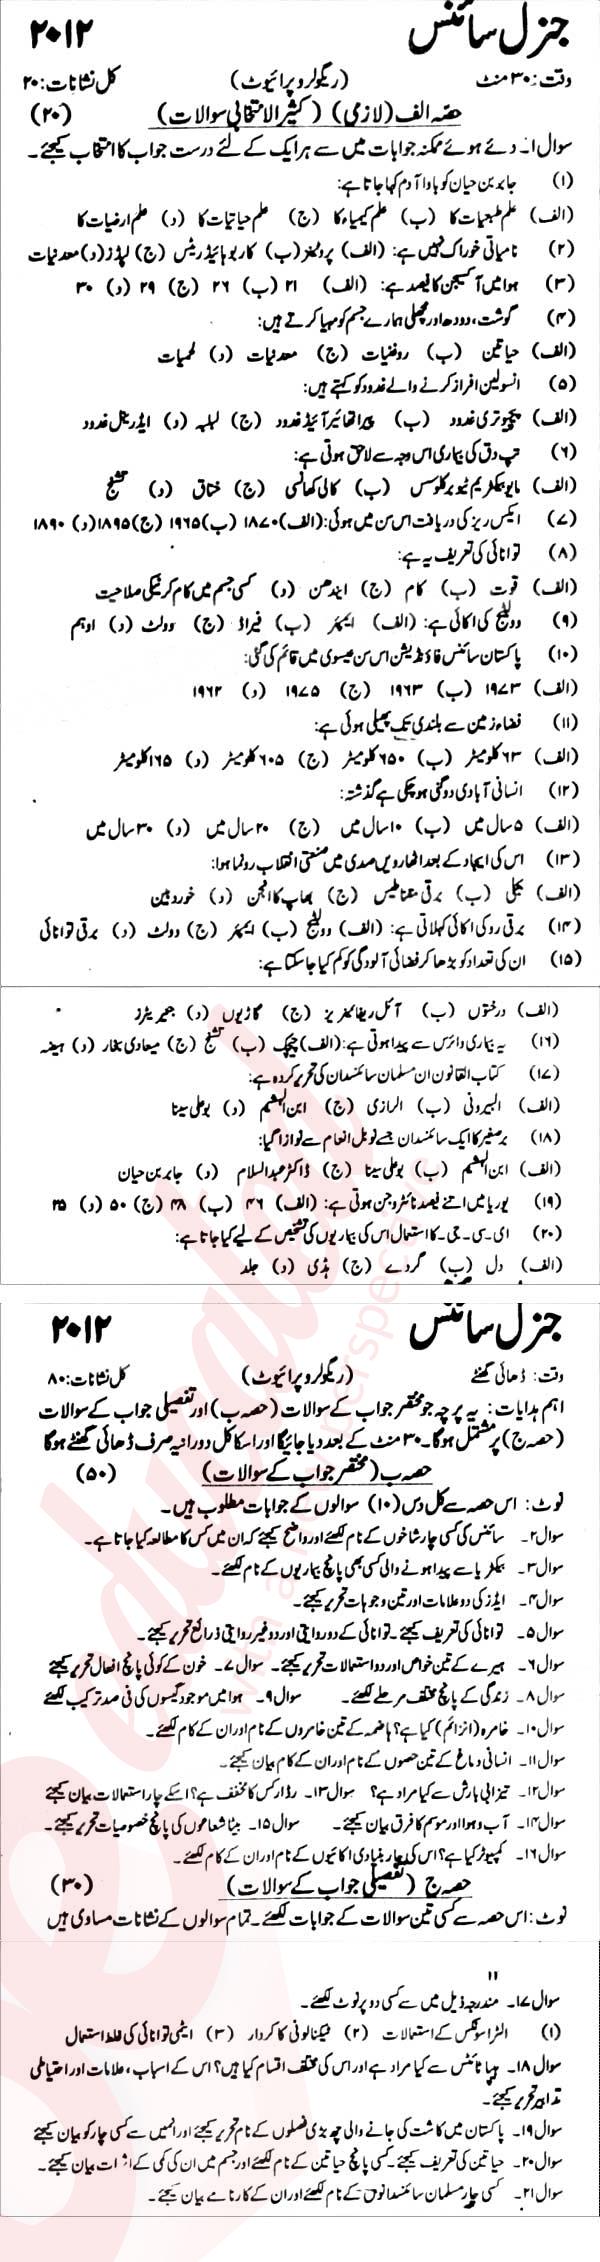 General Science 9th Urdu Medium Past Paper Group 1 KPBTE 2012